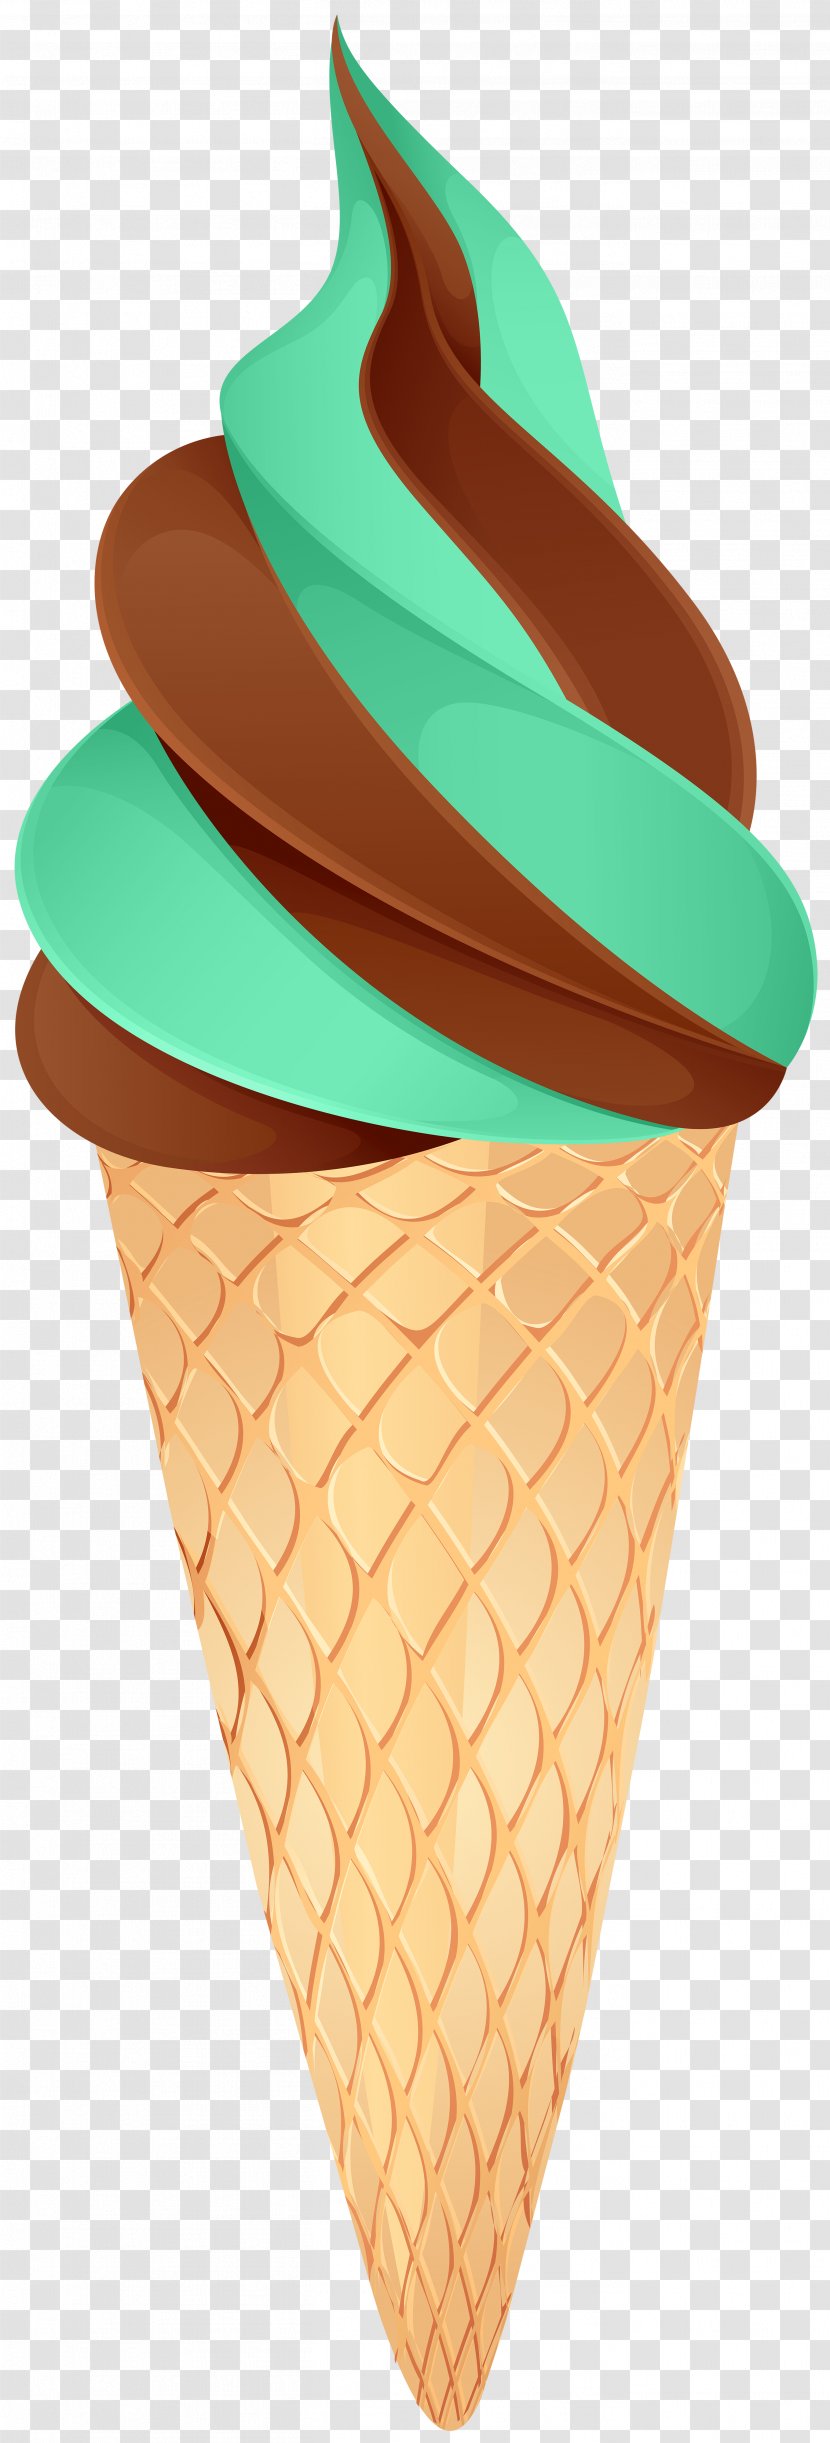 Chocolate Ice Cream Cones Image Clip Art Transparent PNG